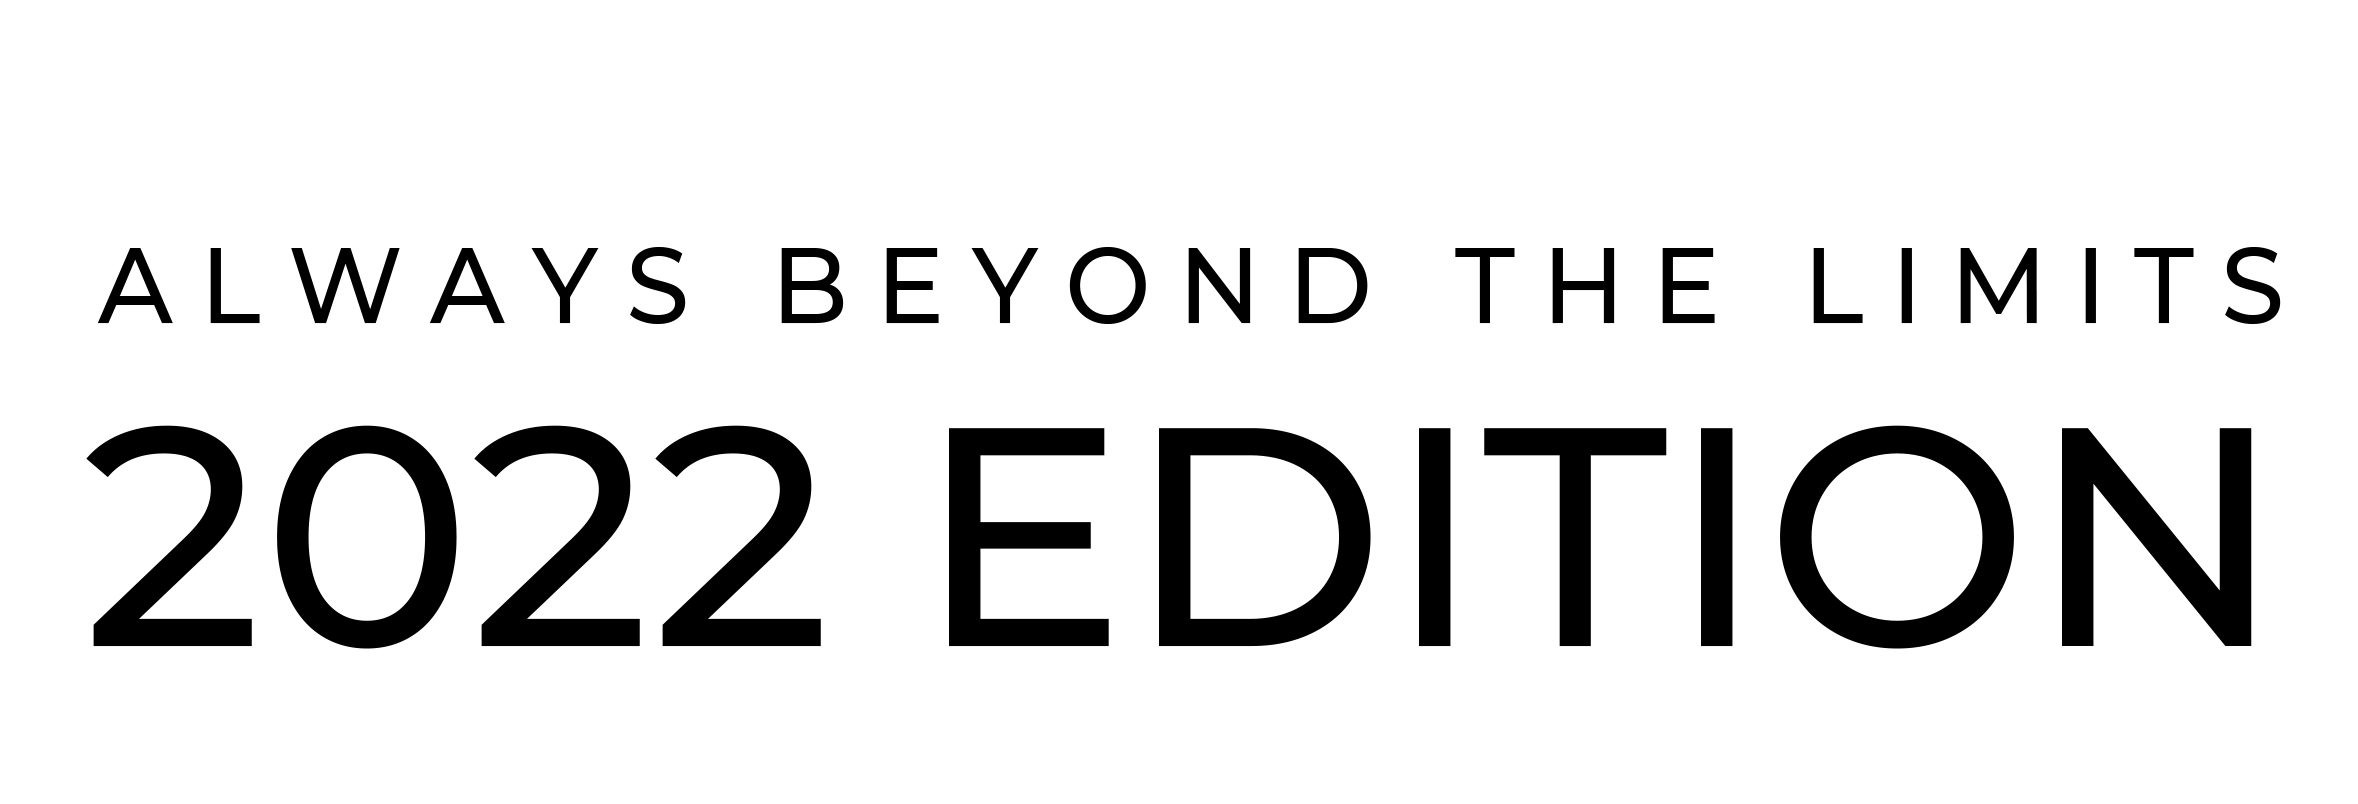 BEYOND 2021 HORIZONTAL sin logo